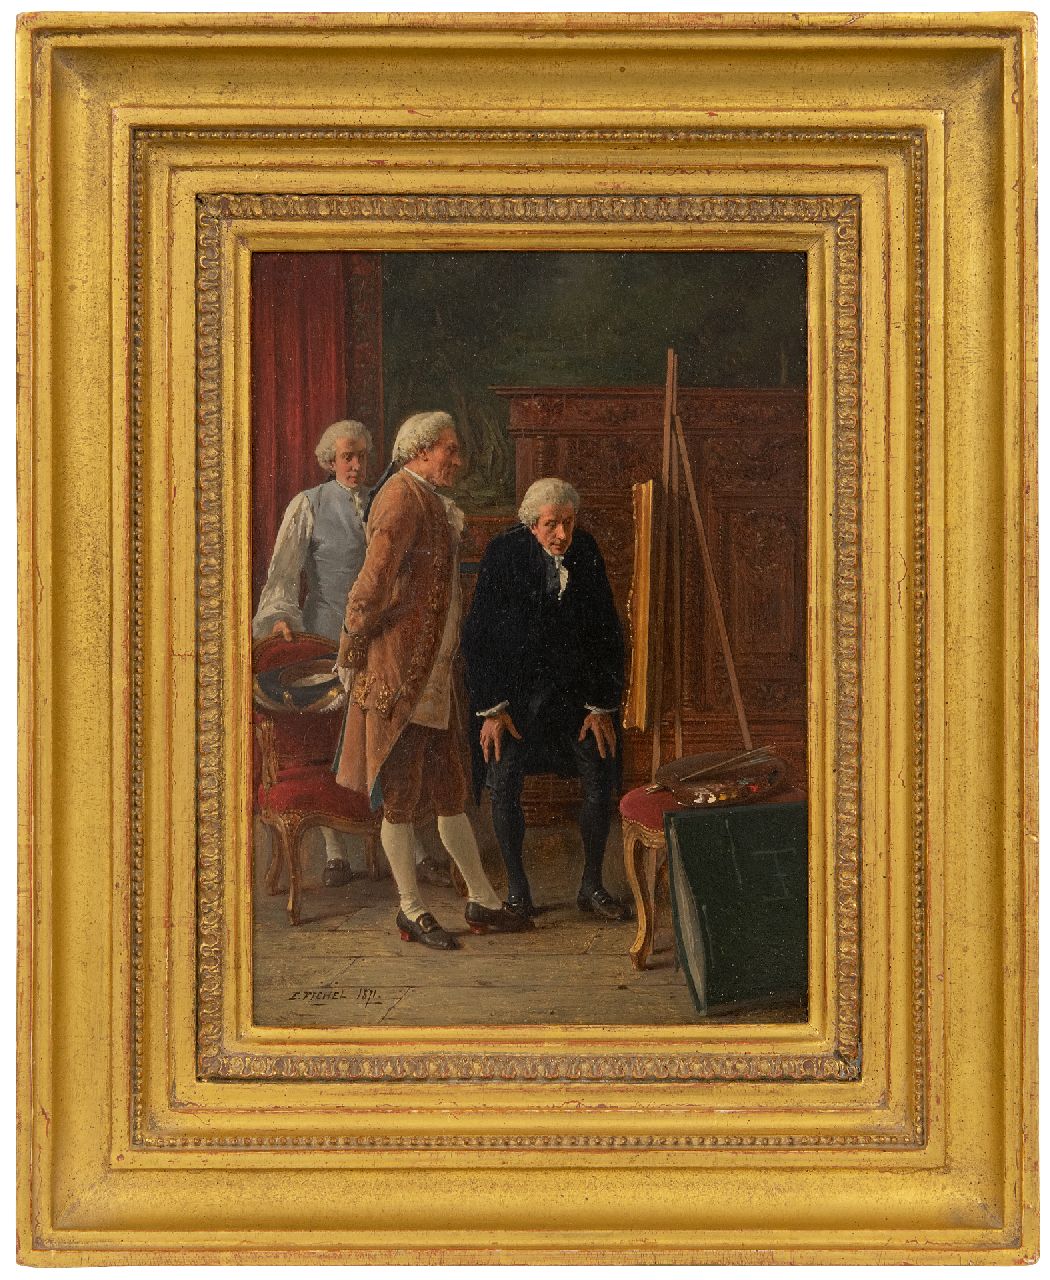 Fichel B.E.  | Benjamin 'Eugène' Fichel | Schilderijen te koop aangeboden | De kunstkenner, olieverf op paneel 21,8 x 15,8 cm, gesigneerd linksonder en gedateerd 1871